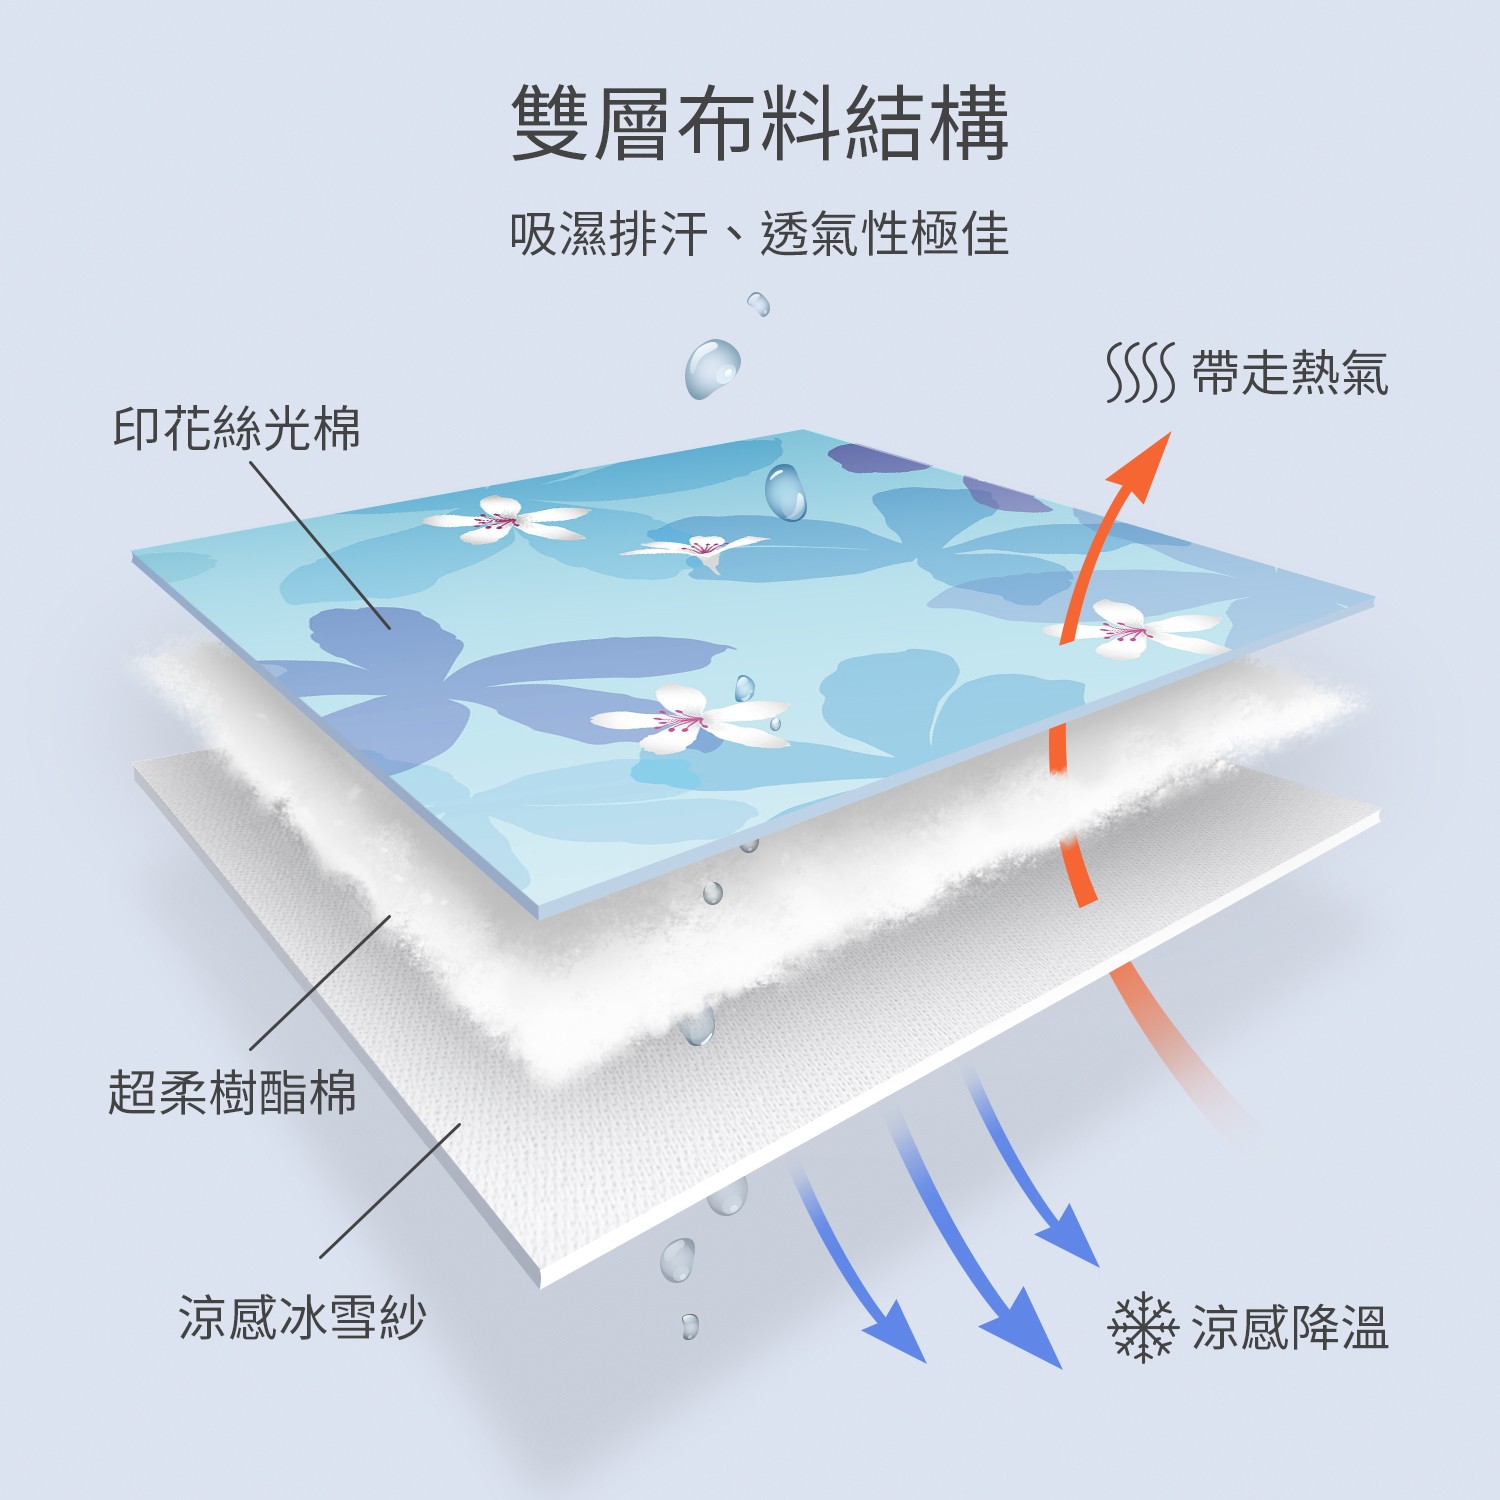 冰雪被使用頂級材料，既有鬆軟度，又能讓您超激涼